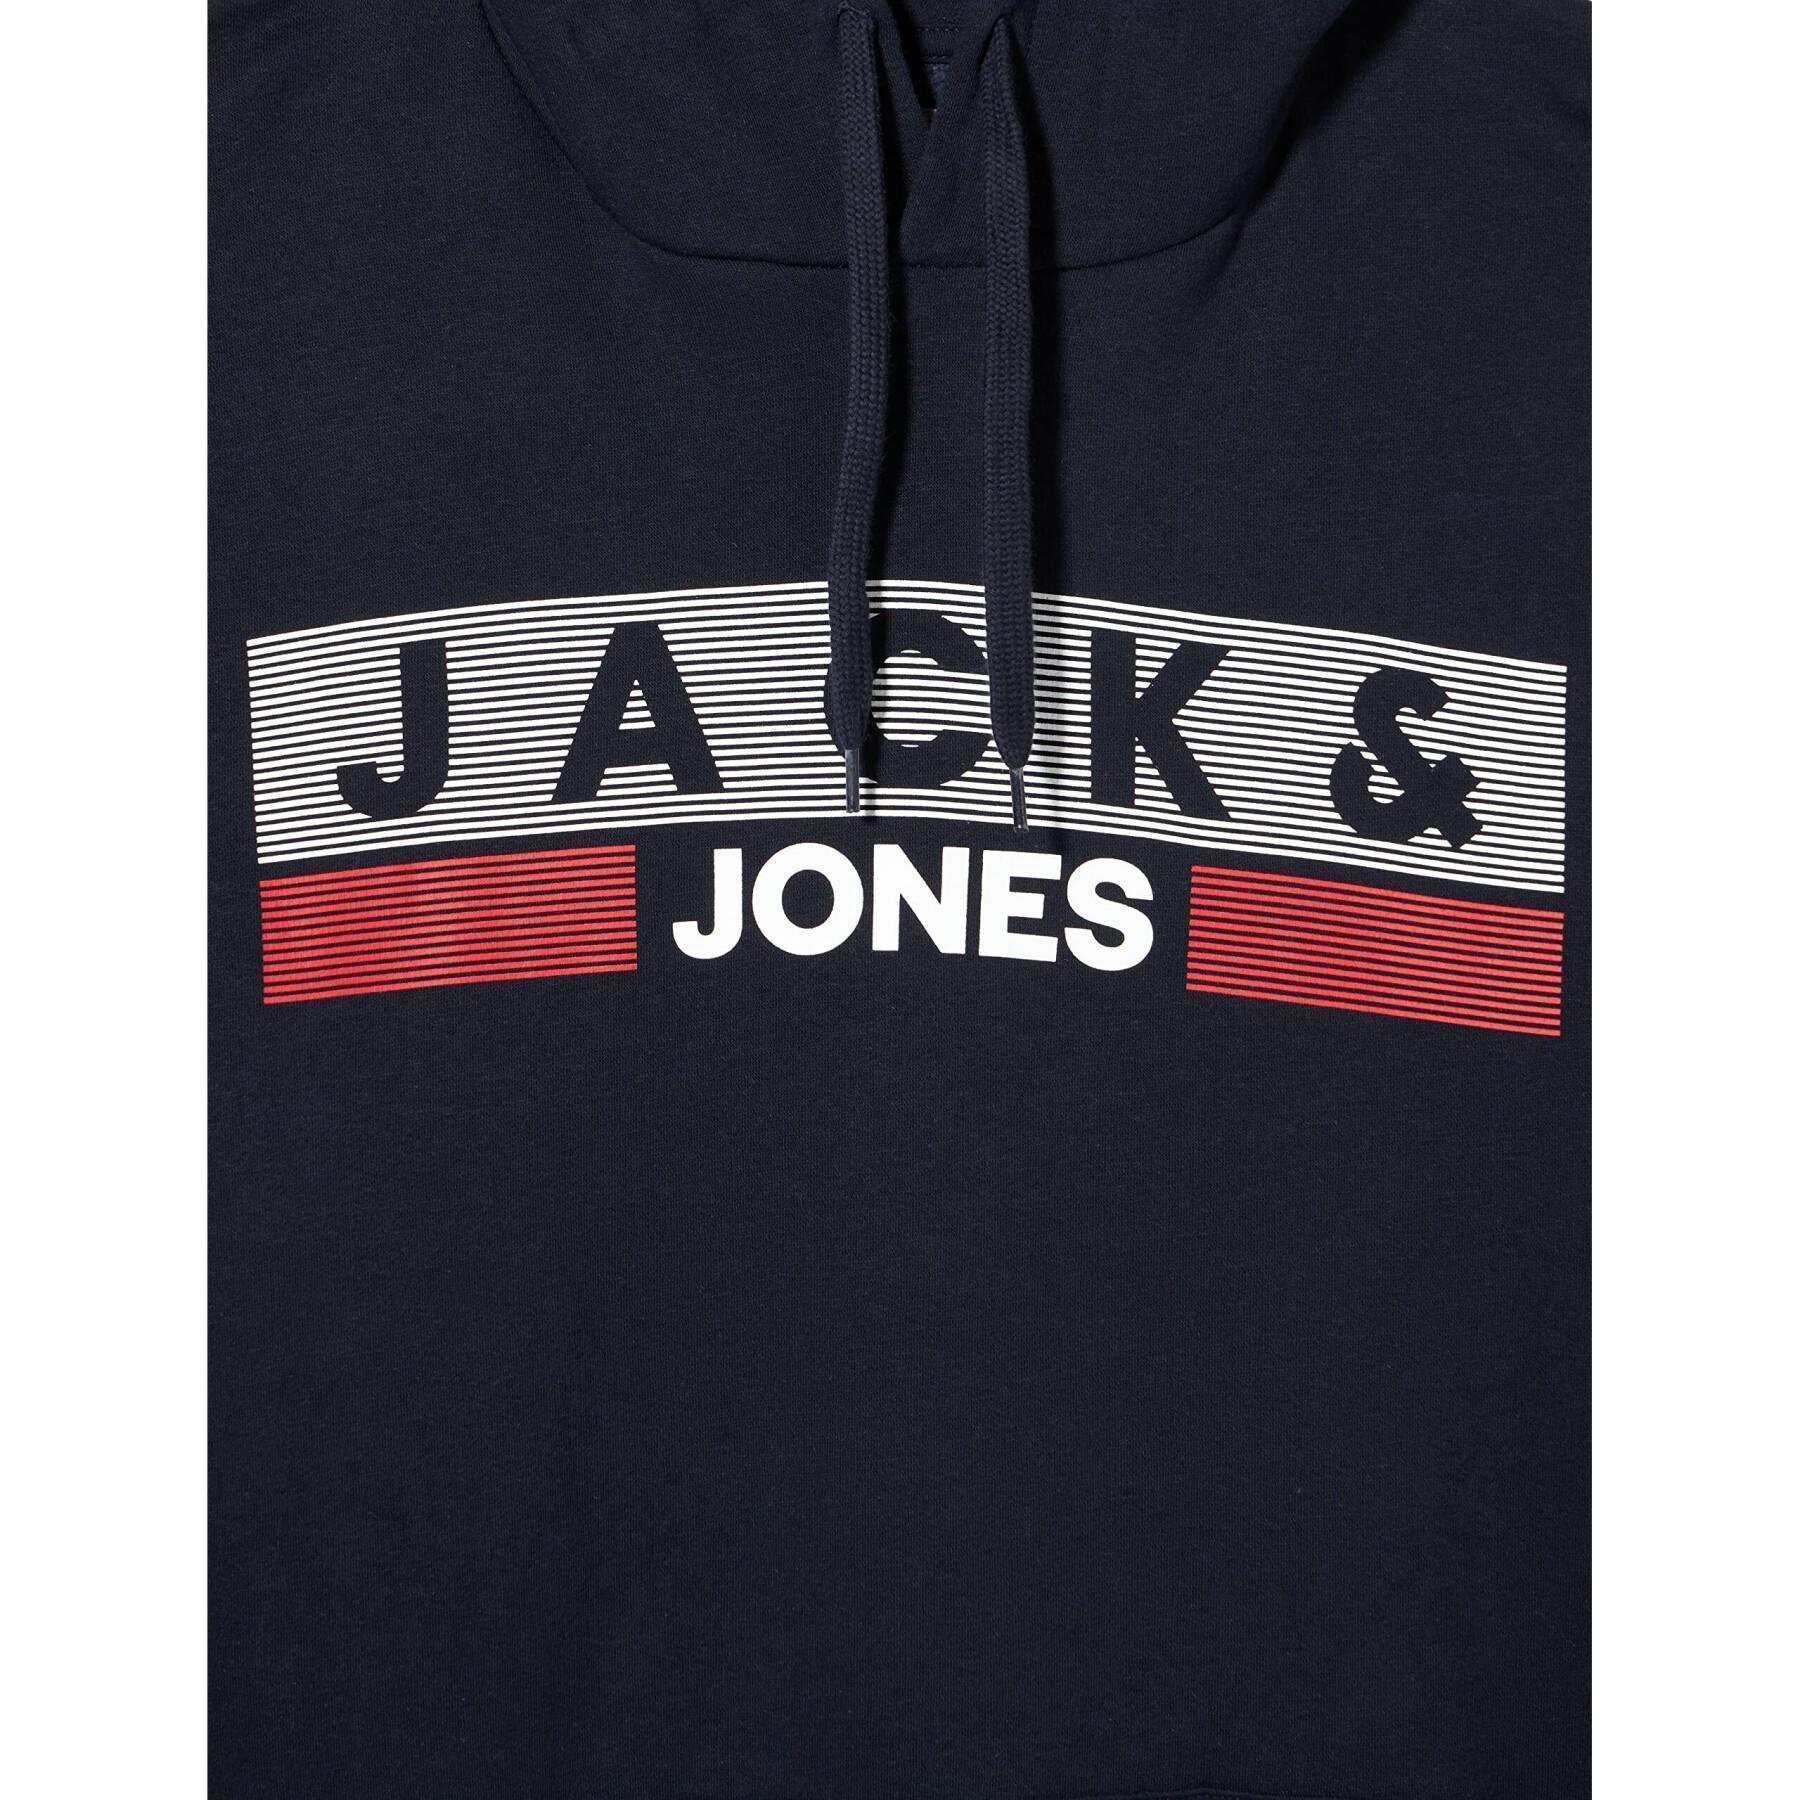 Felpa grande con cappuccio Jack & Jones Corp Logo